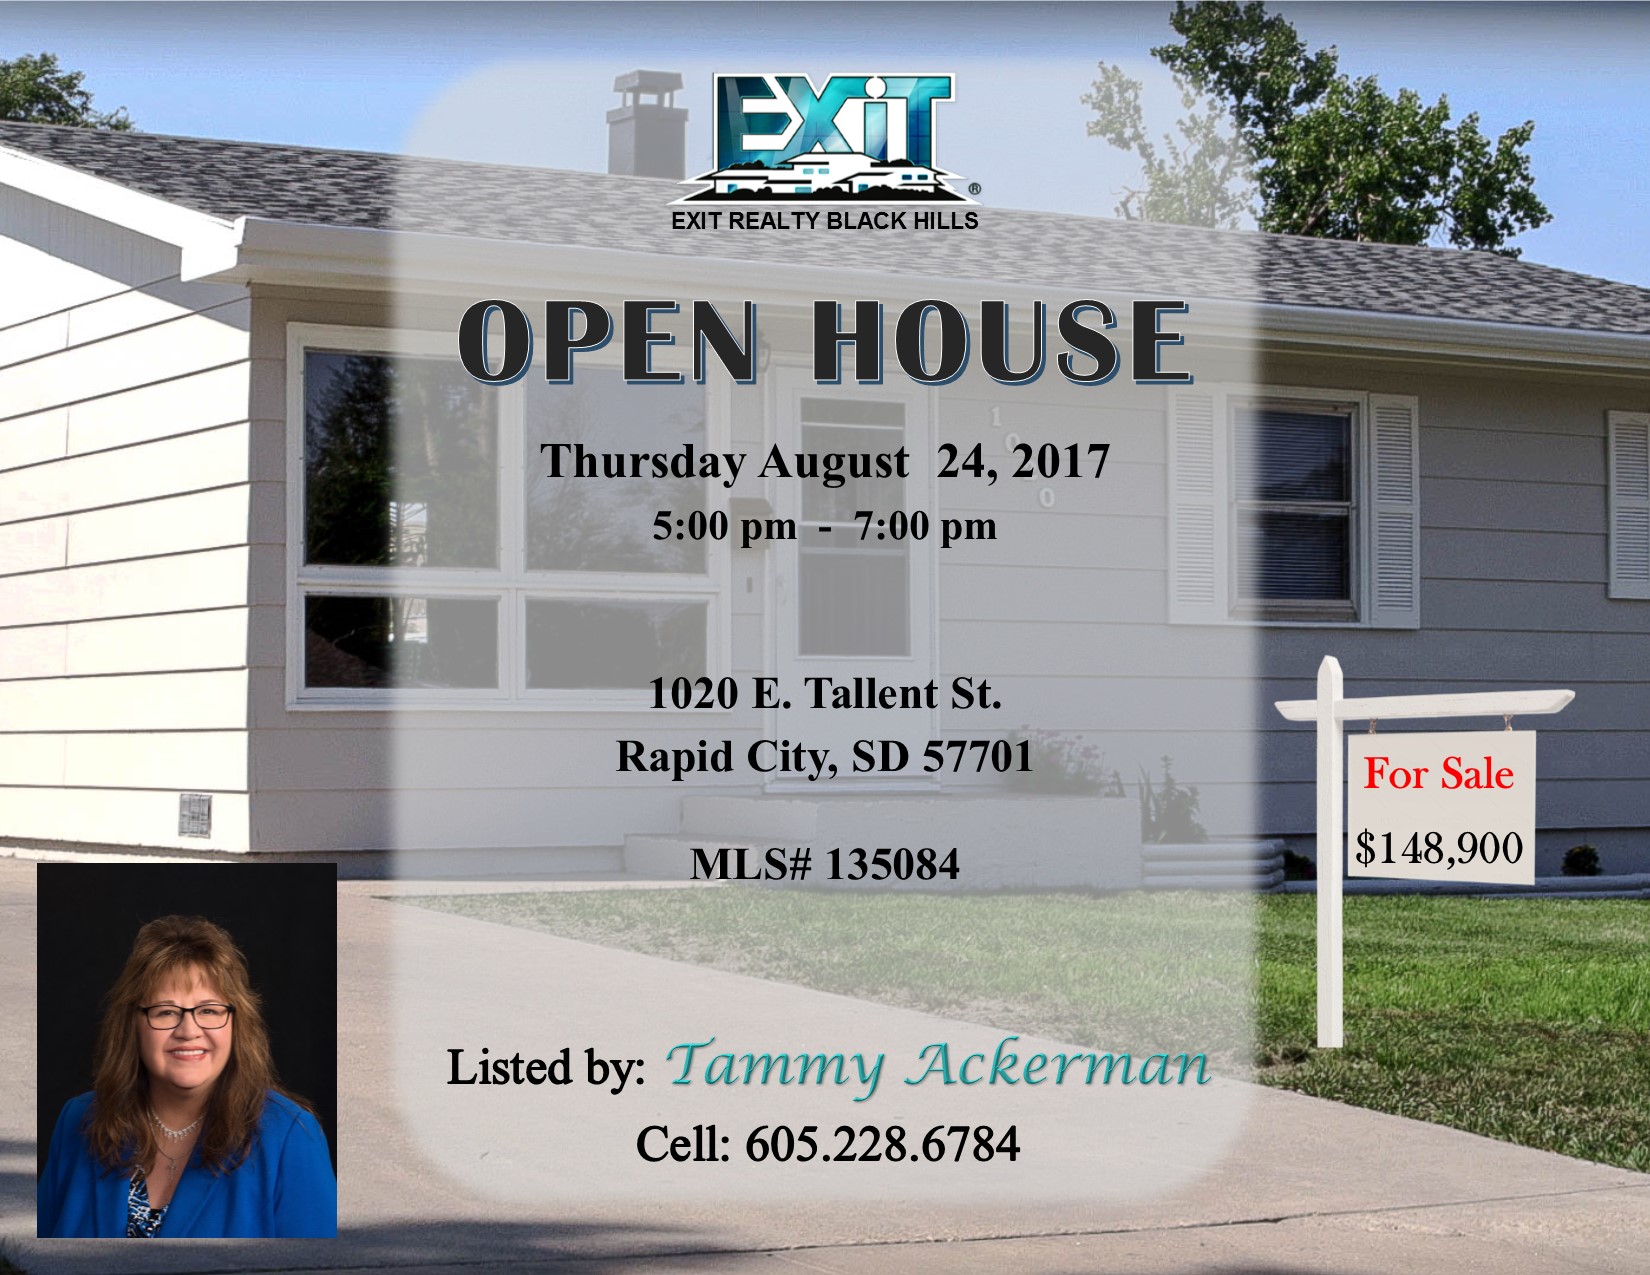 OPEN HOUSE for Thursday August 24, 2017